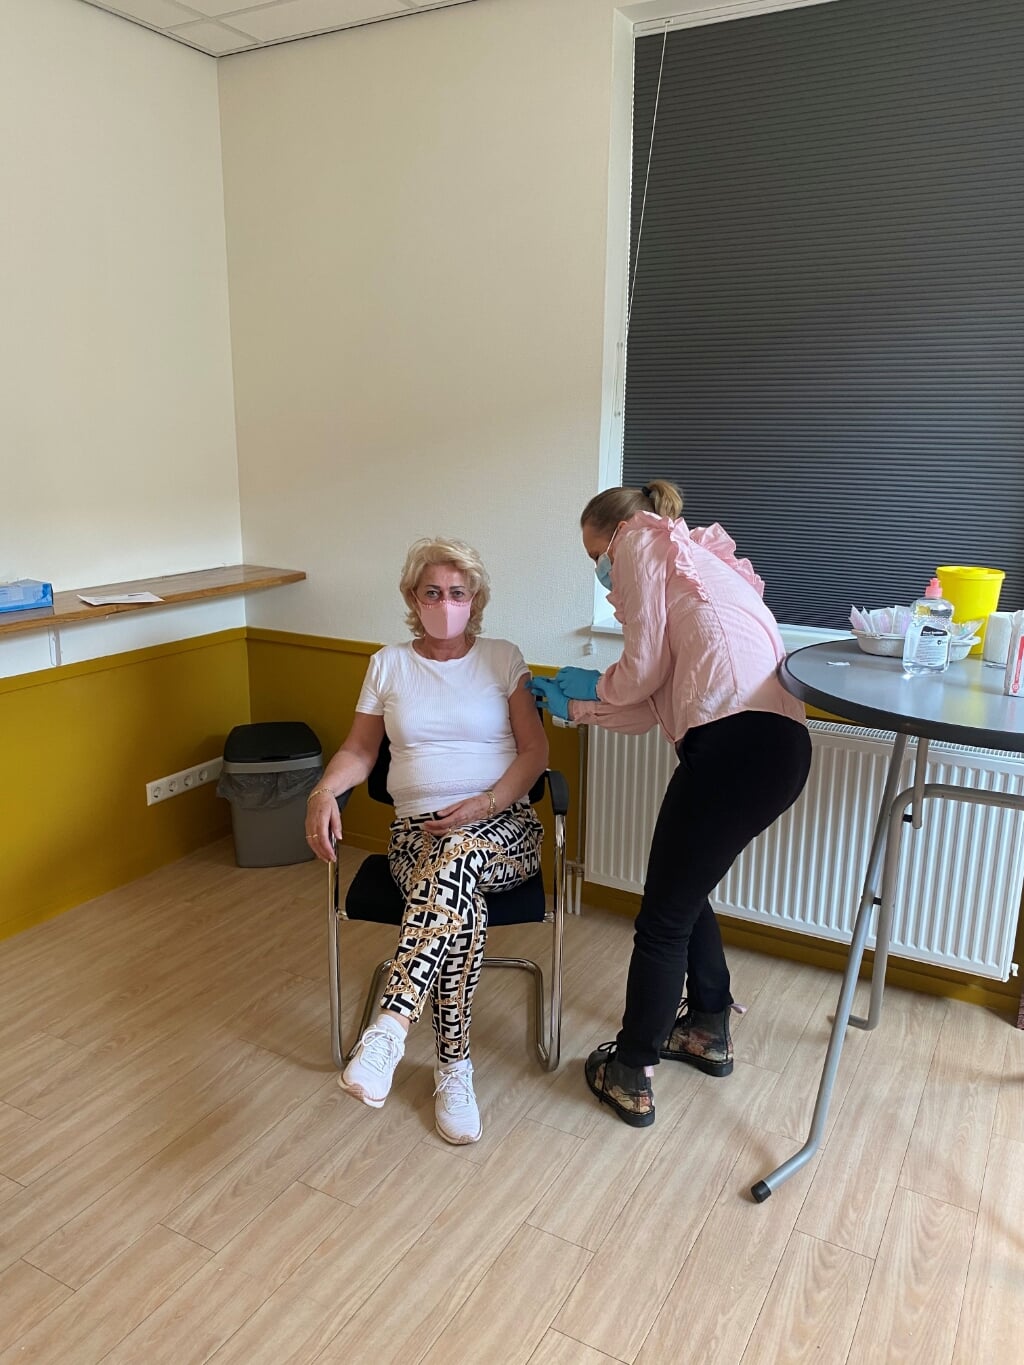 • Huisarts Roozemond-de Zeeuw vaccineert een patiënt.